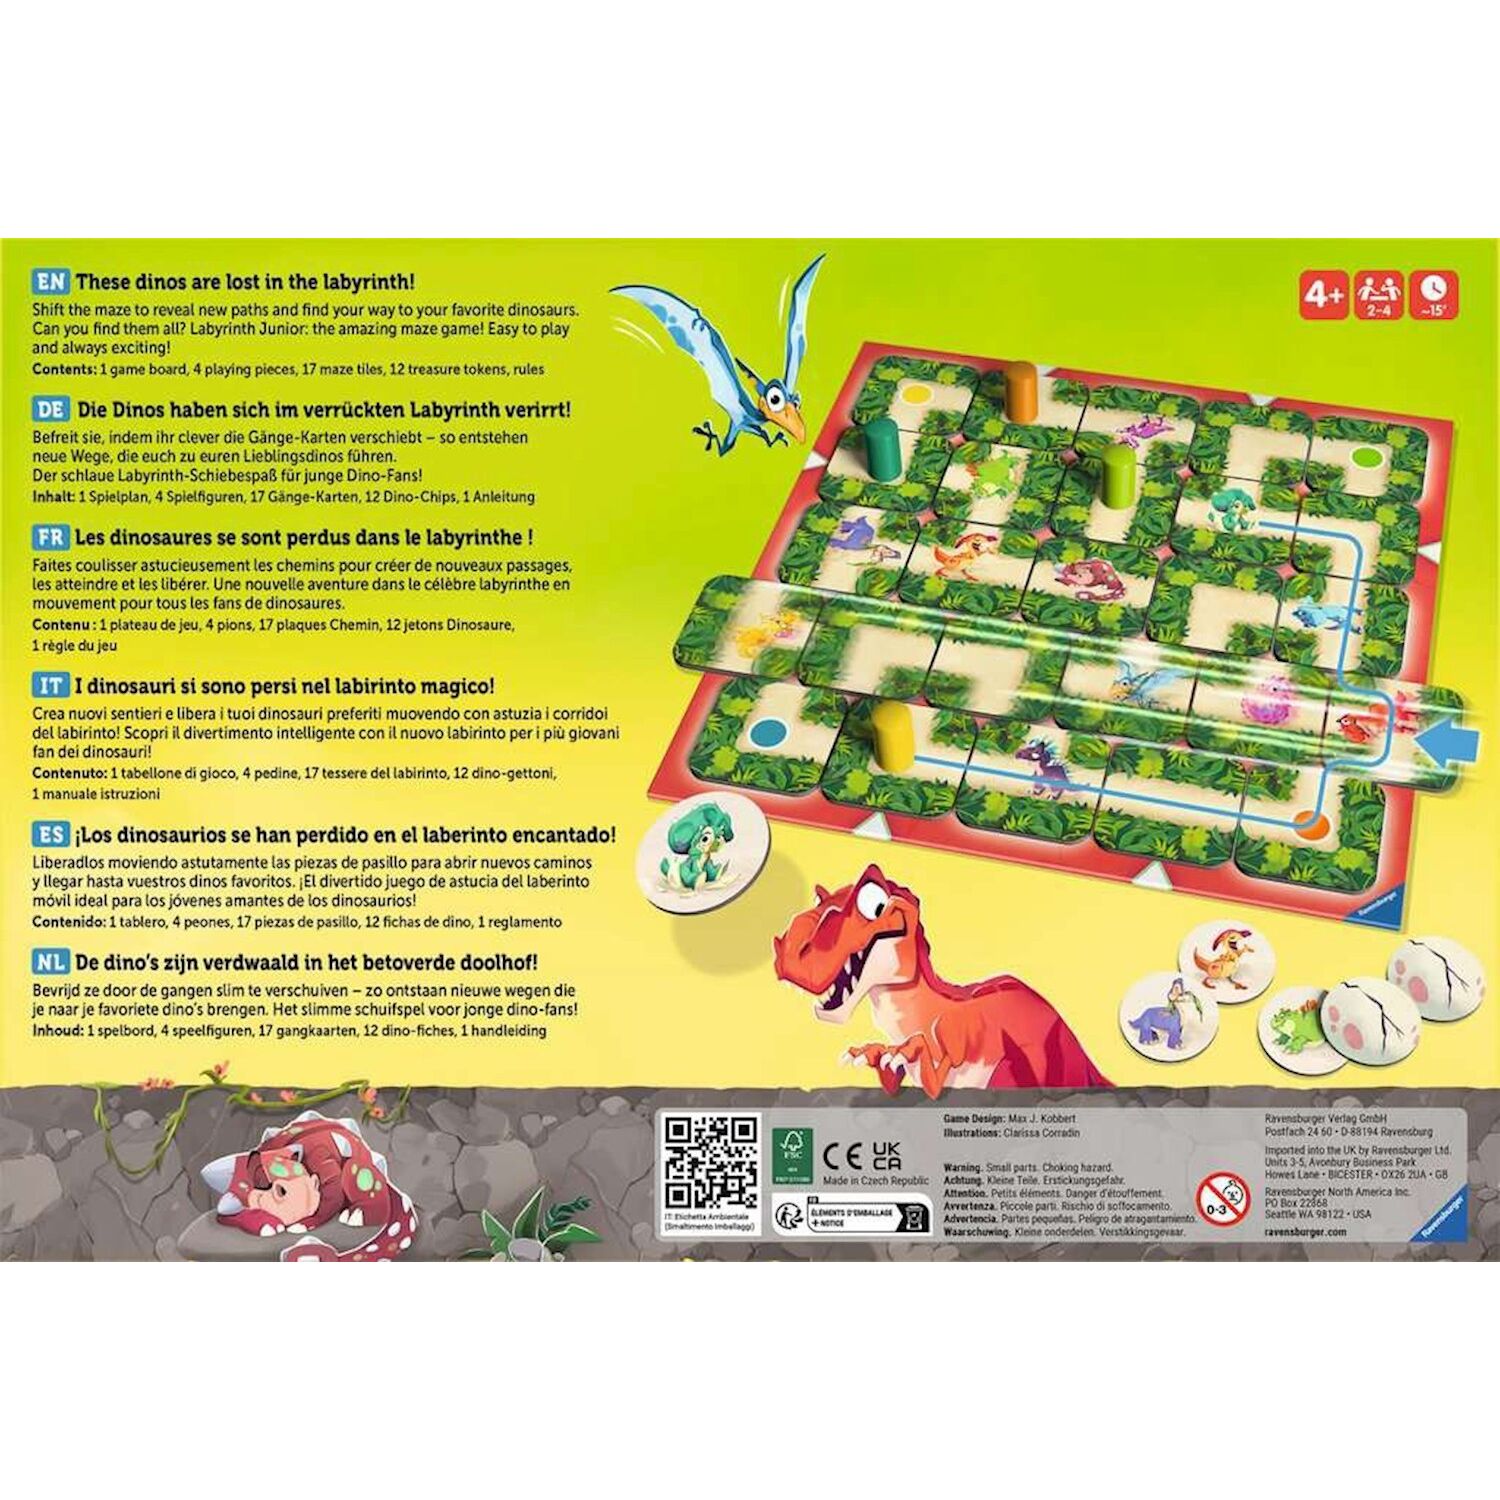 Labyrinthe 3D Ravensburger : King Jouet, Jeux de stratégie Ravensburger -  Jeux de société